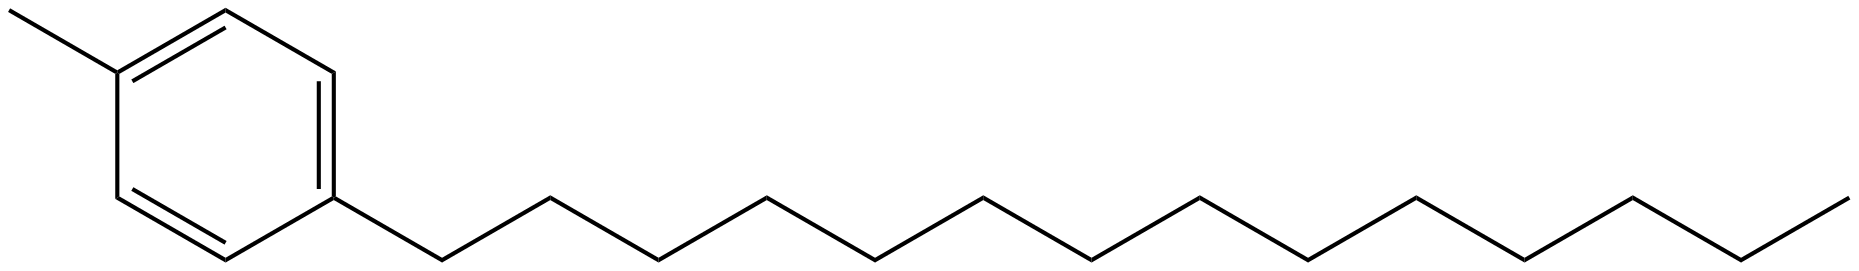 Image of 1-methyl-4-tetradecylbenzene